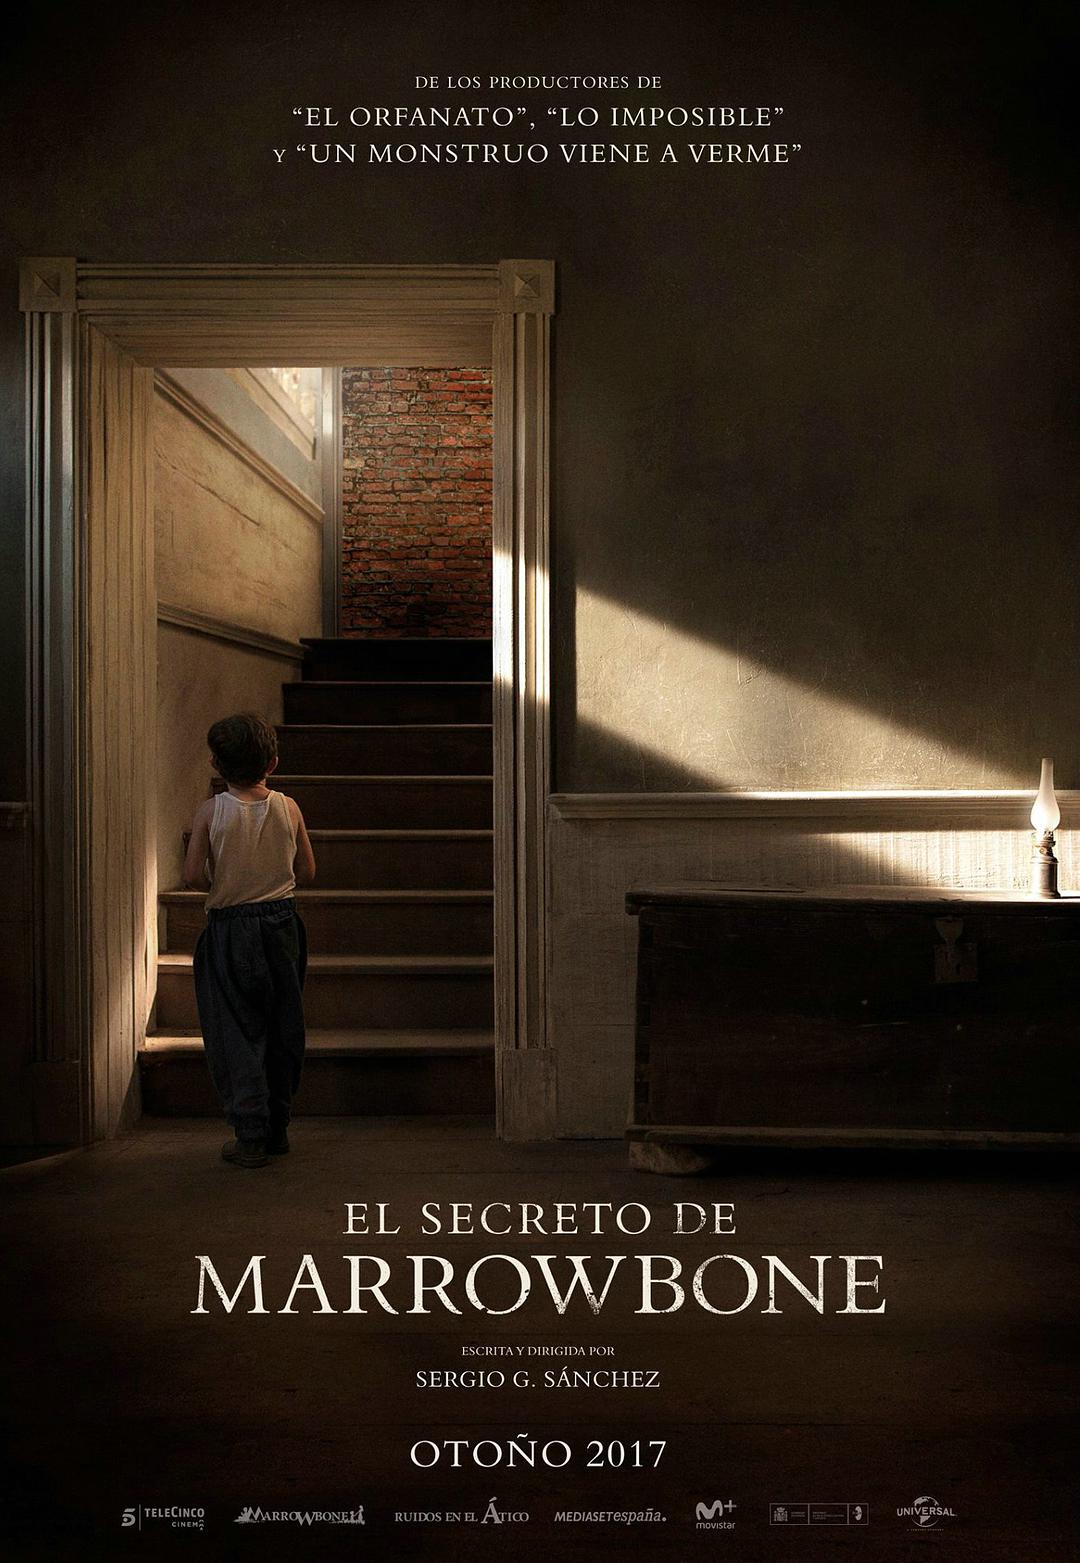 马柔本宅秘事 蓝光原盘下载+高清MKV版/ 髓骨 / Marrowbone 2017 El secreto de Marrowbone 42.89G